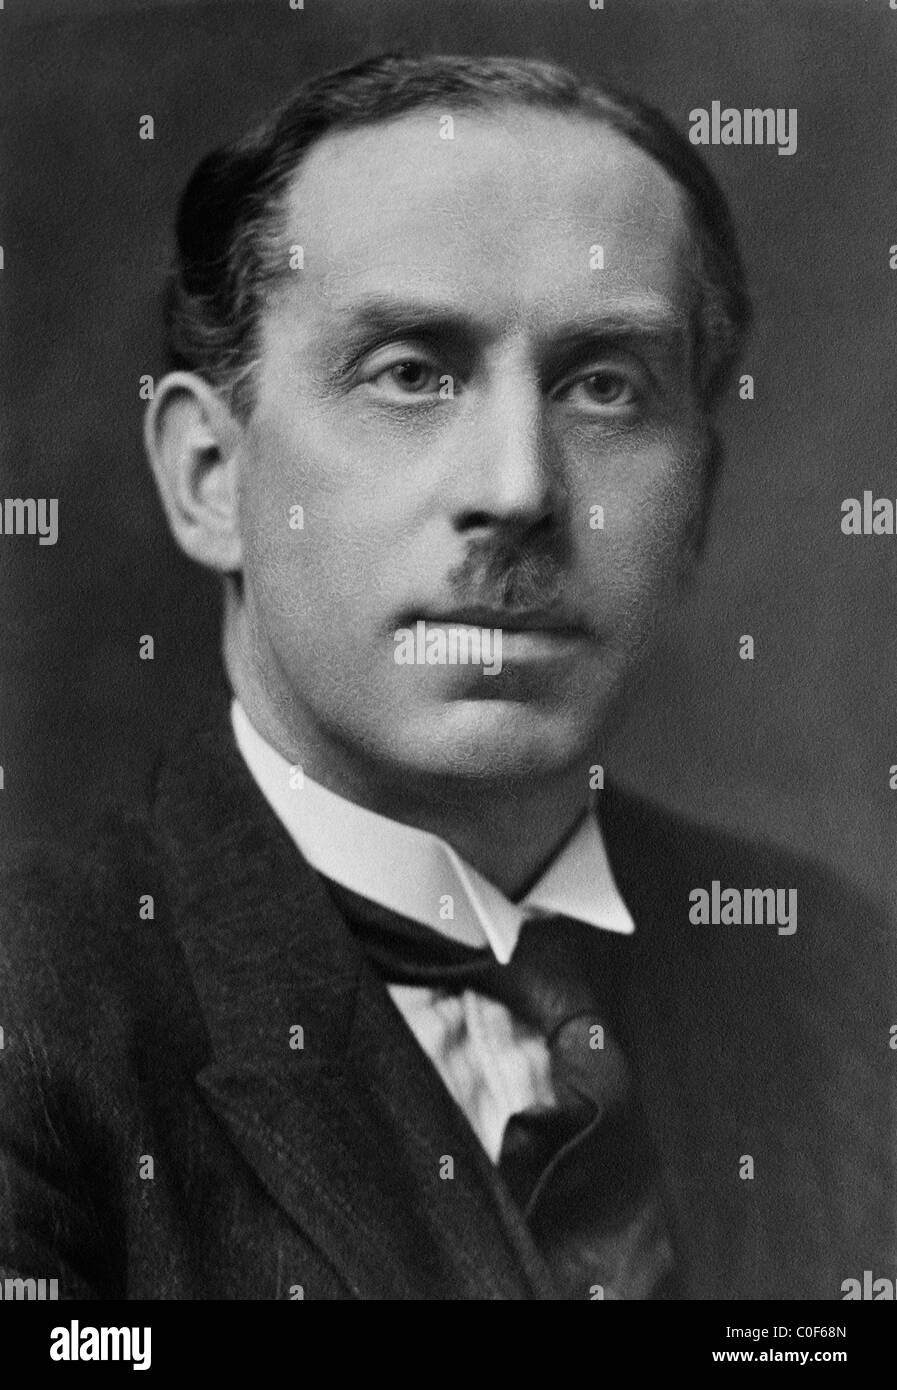 Englischer Physiker Charles Glover mit (1877-1944) - Nobelpreisträger in Physik im Jahr 1917 für seine Arbeit auf Röntgenbildern. Stockfoto